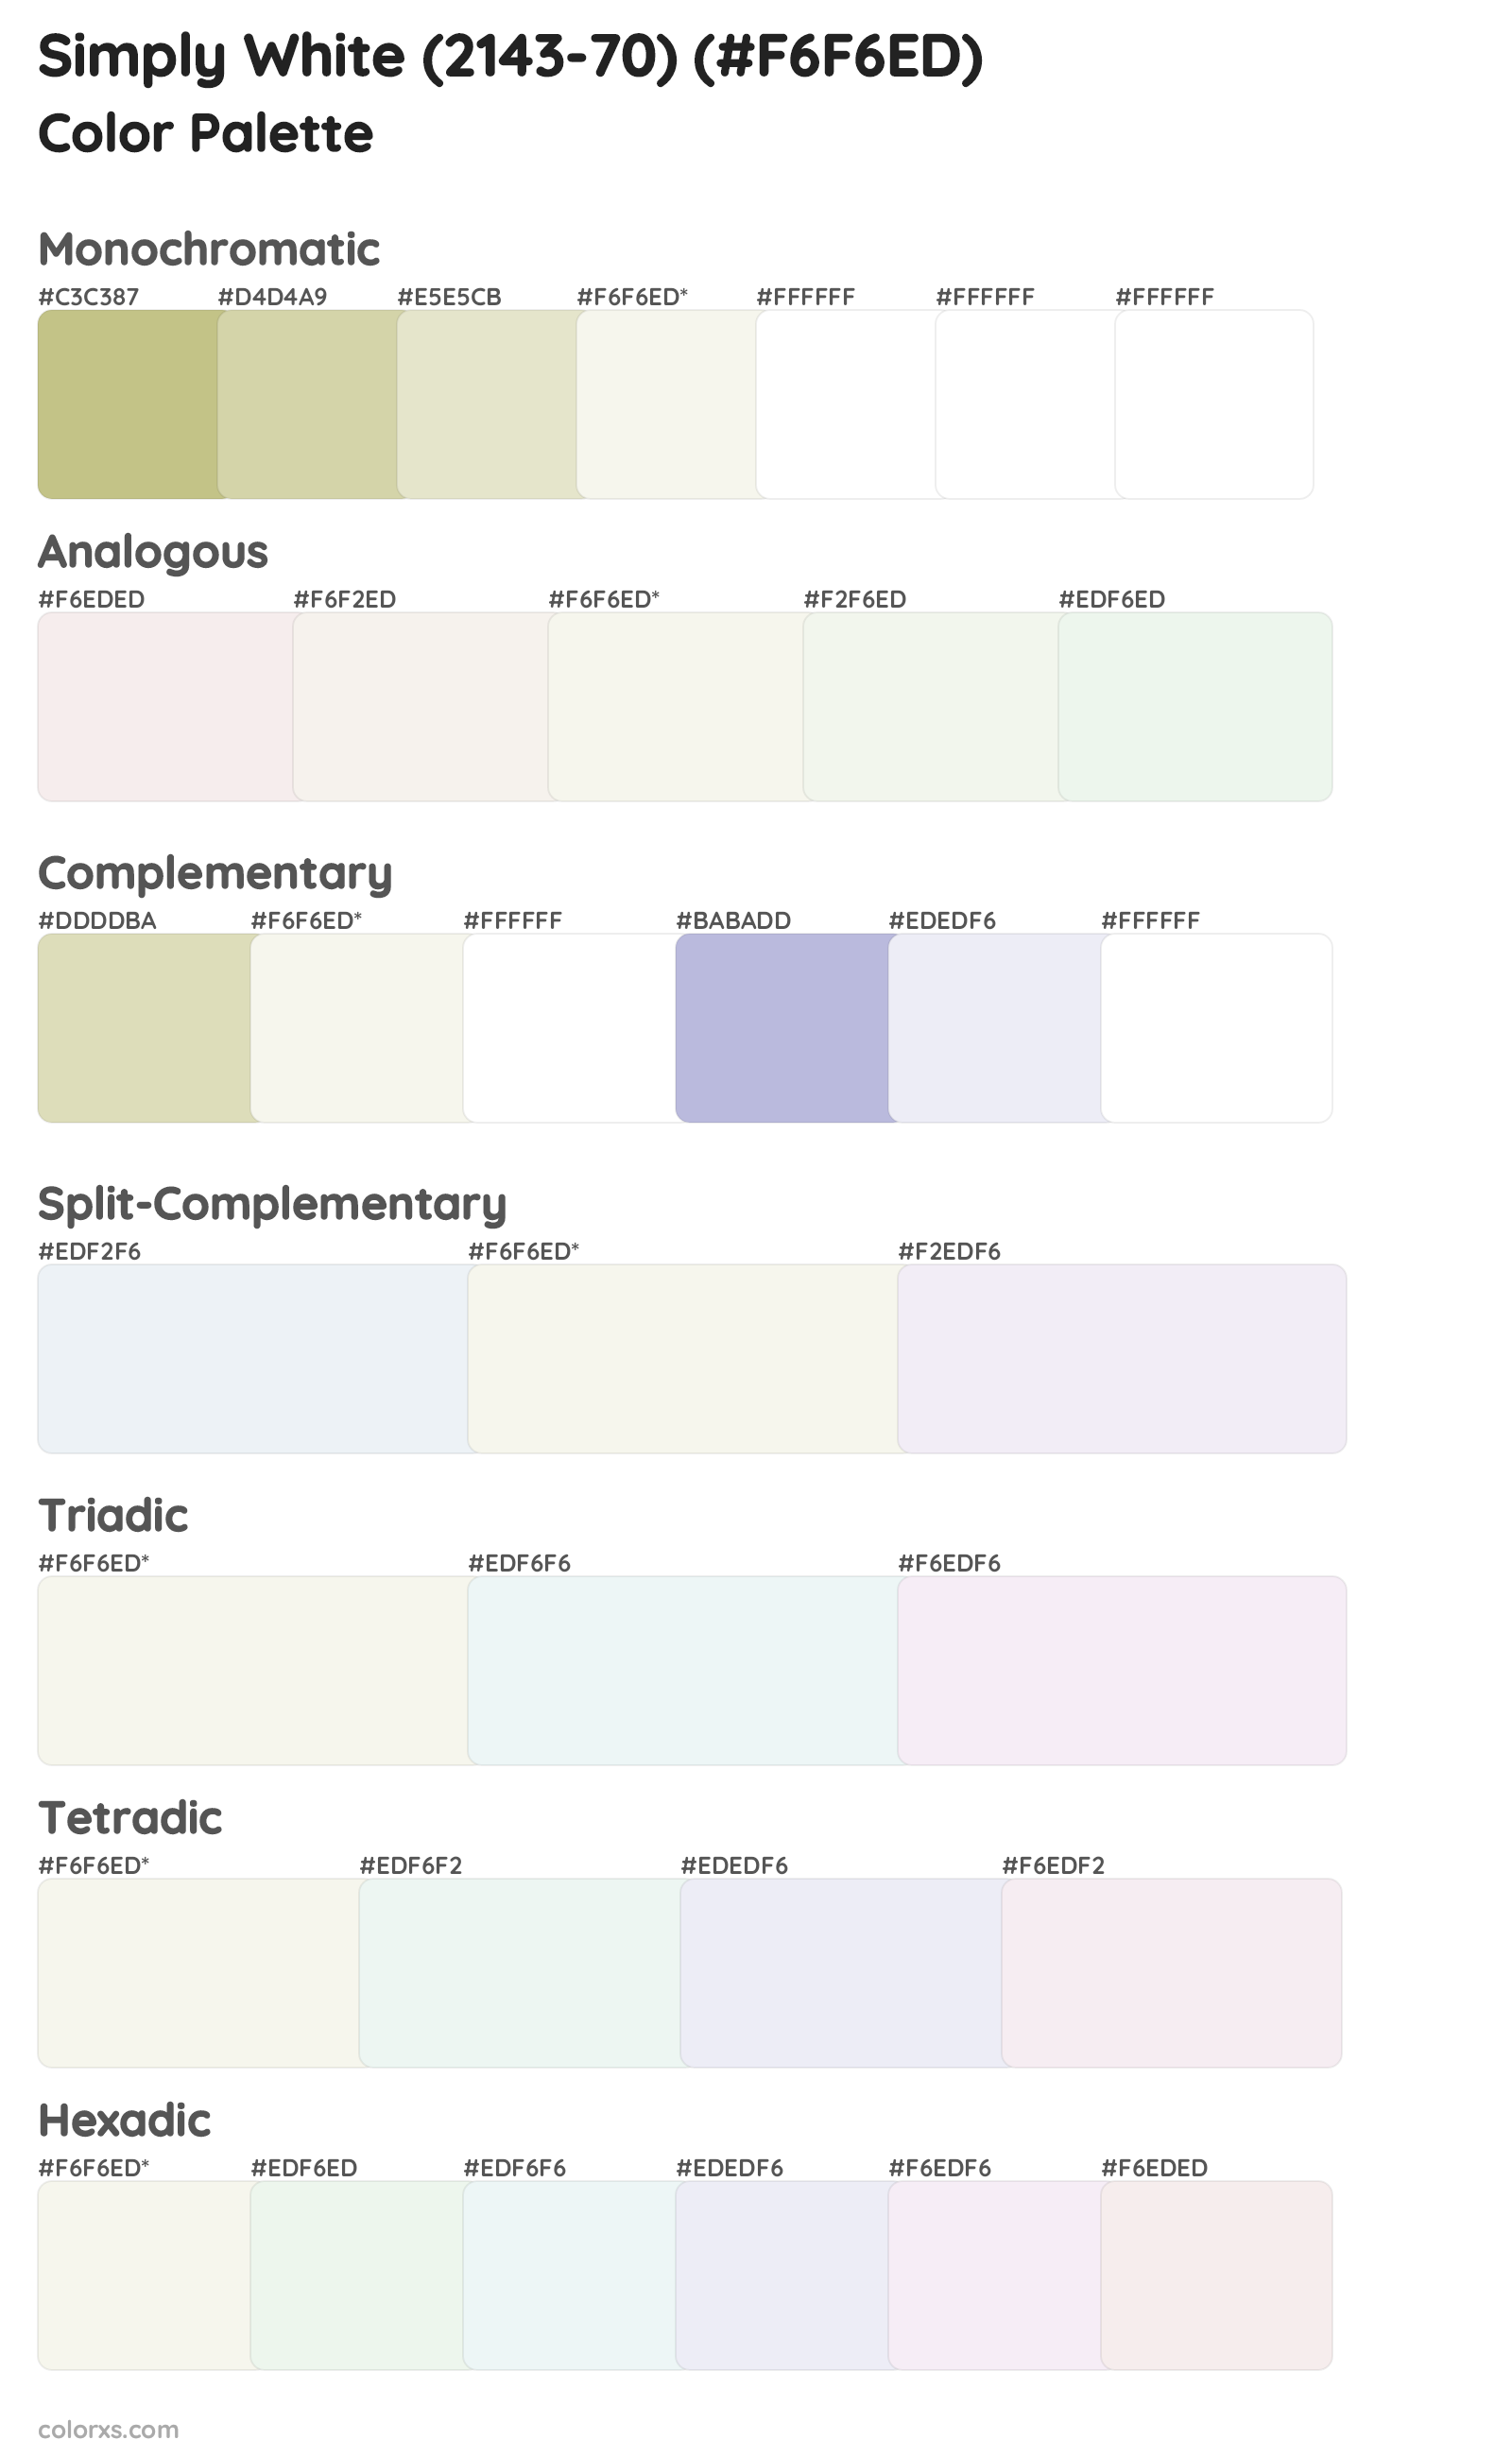 Simply White (2143-70) Color Scheme Palettes